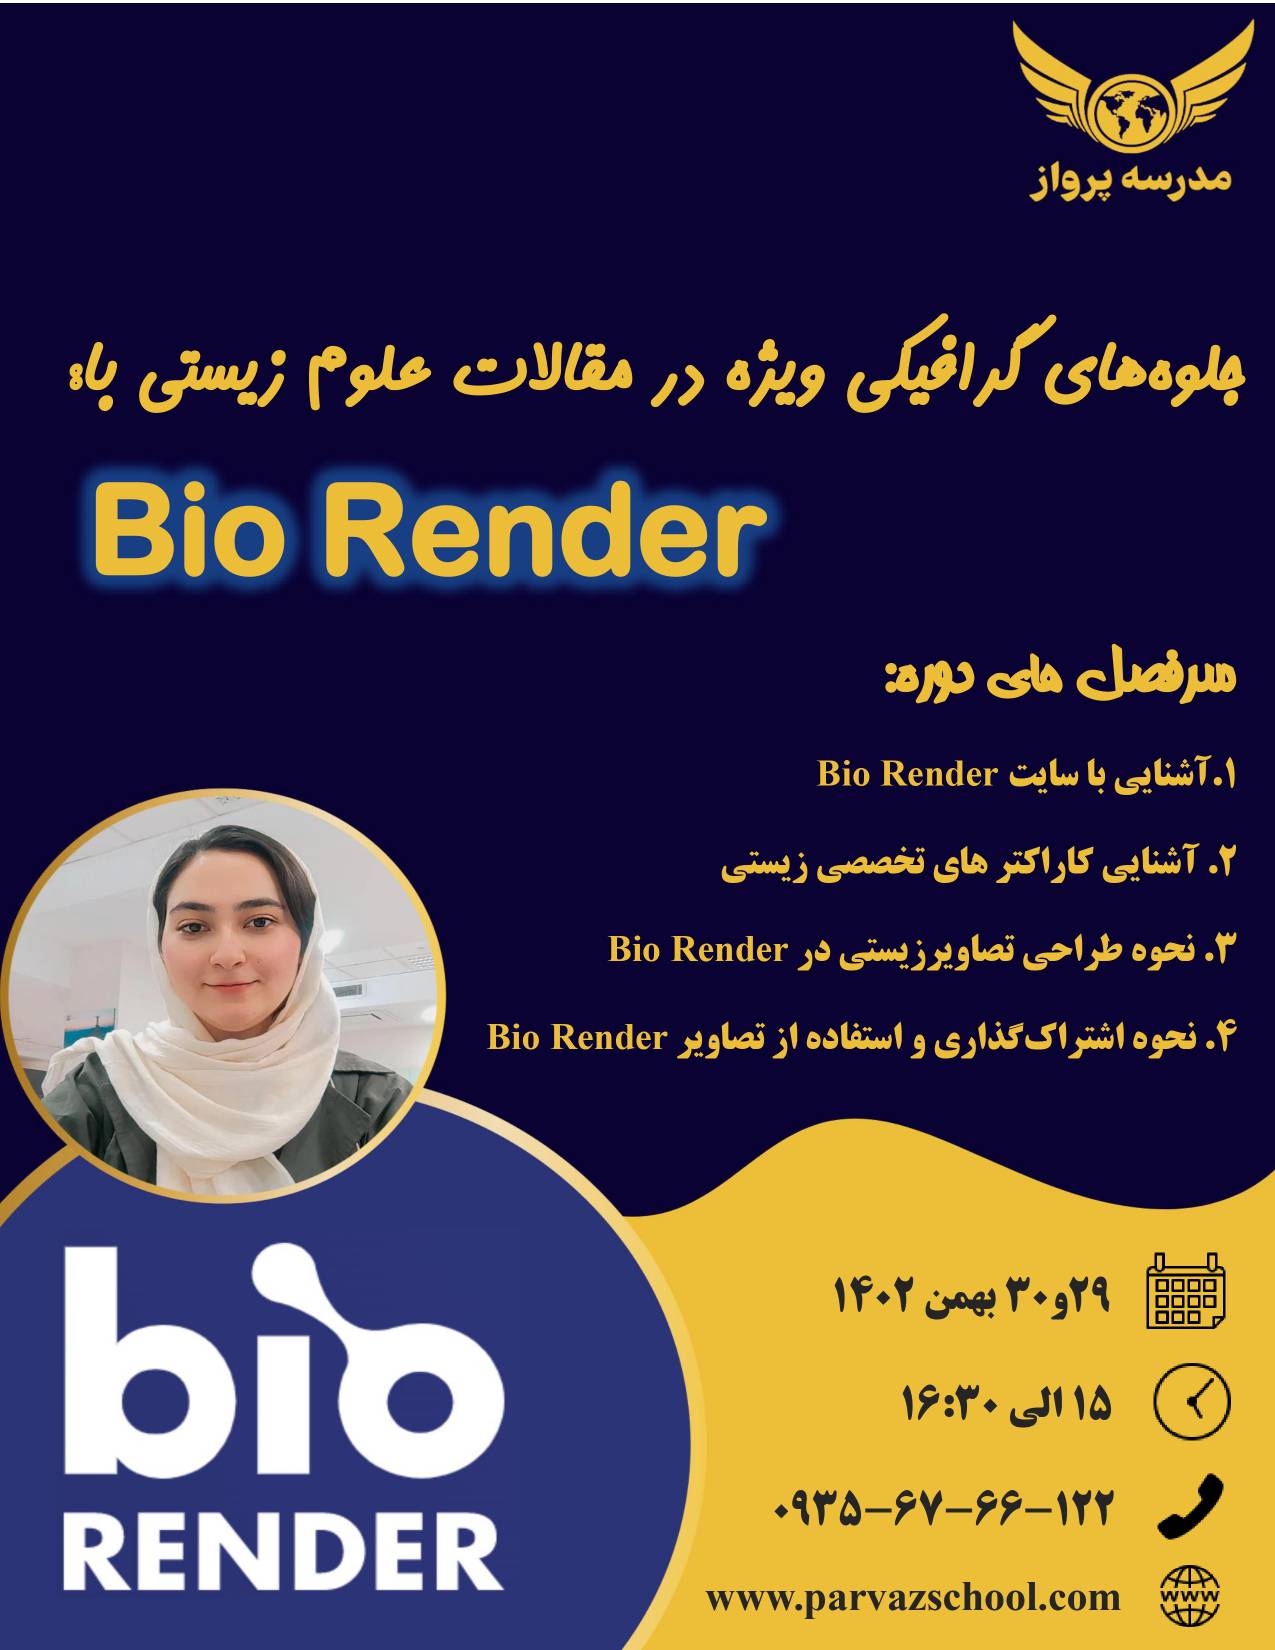 دوره جلوه های گرافیکی ویژه در مقالات علوم زیستی با Bio Render